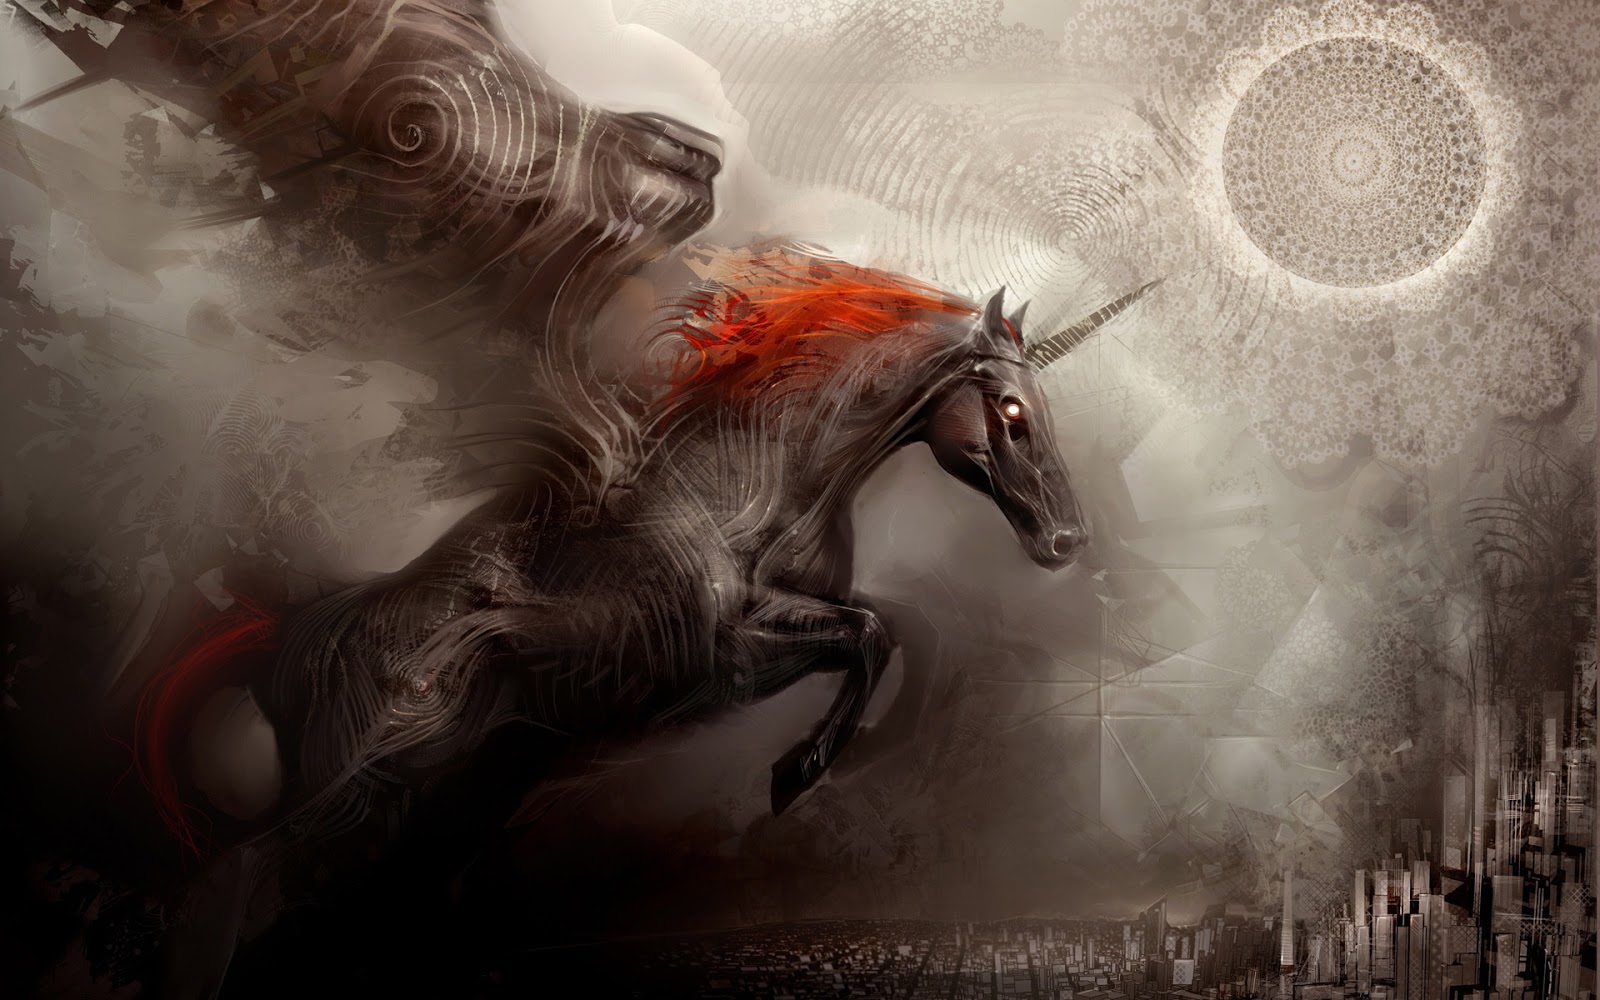 unicorno wallpaper hd,cg artwork,personaggio fittizio,creatura mitica,mitologia,illustrazione